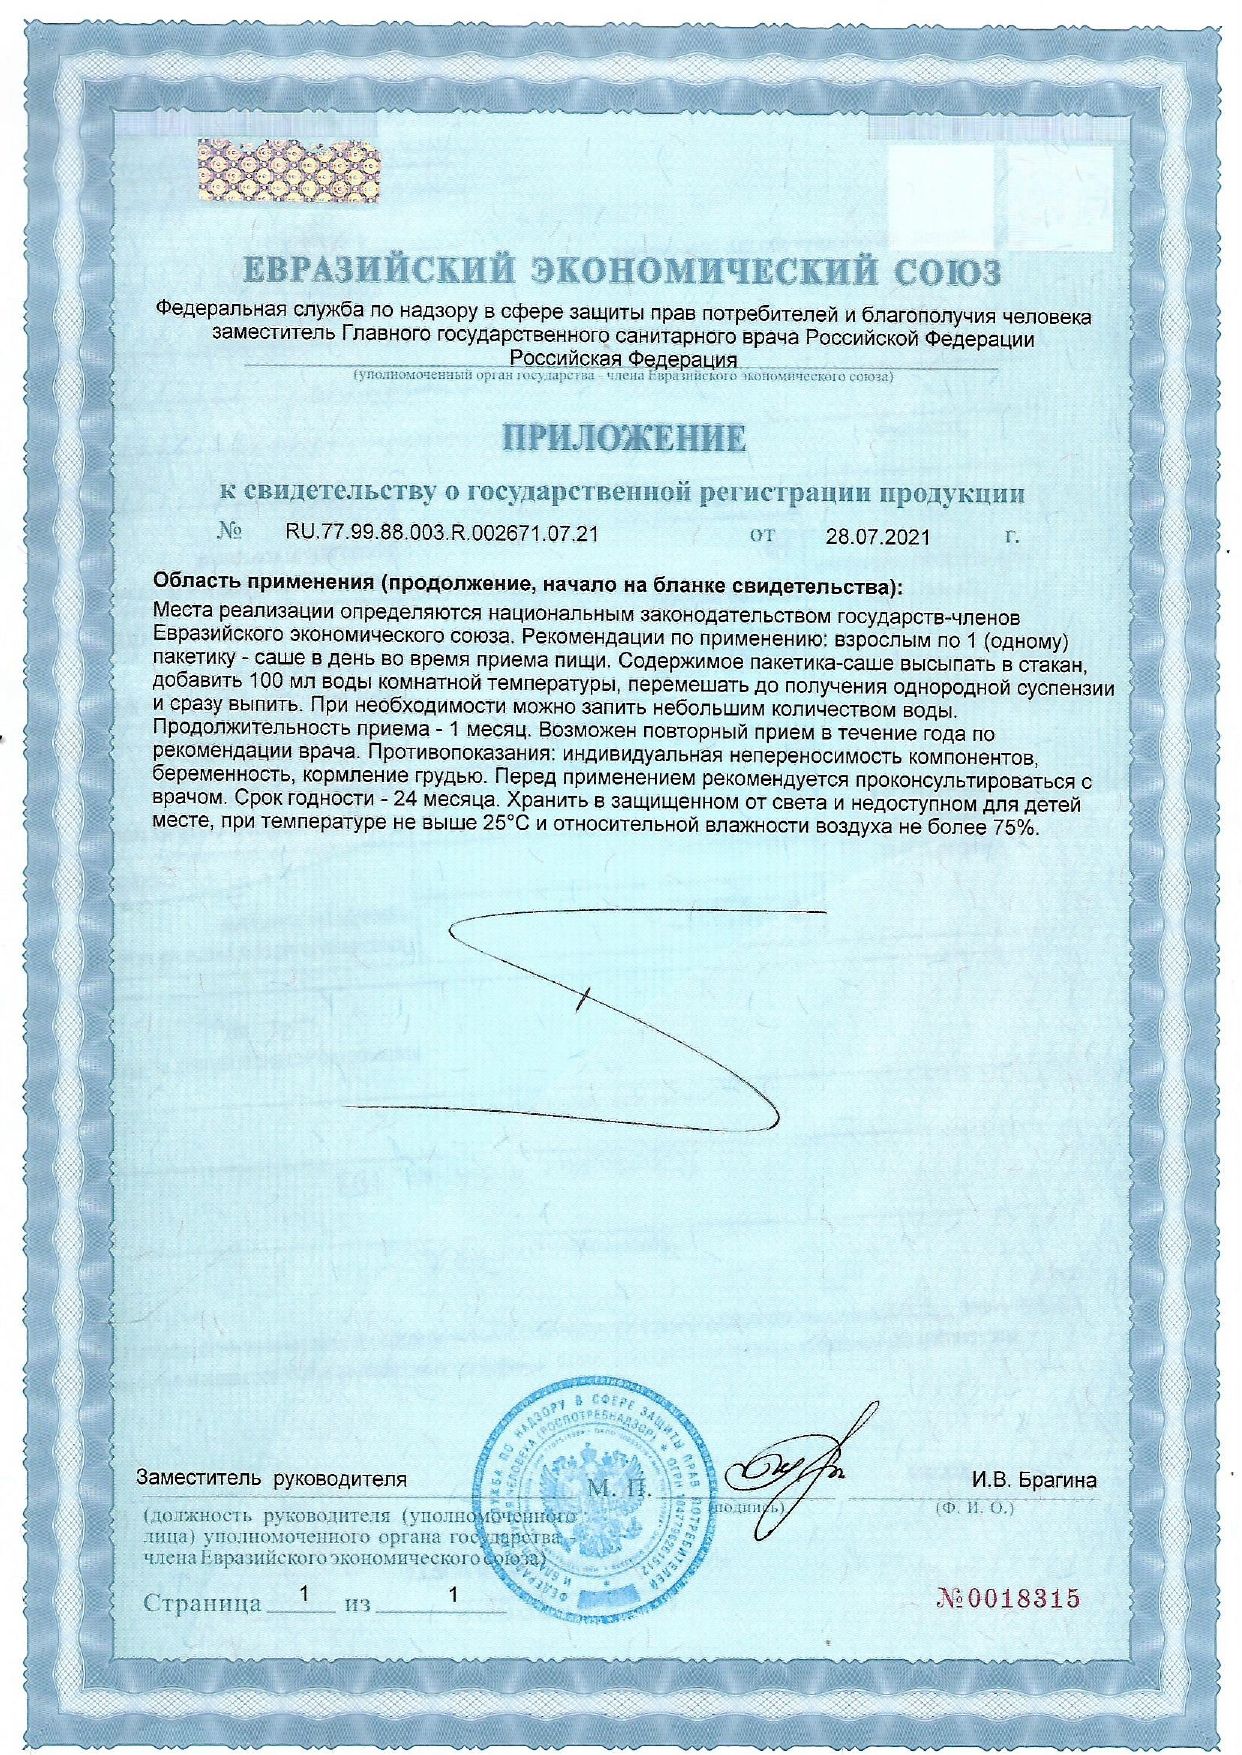 Картилокс сертификат